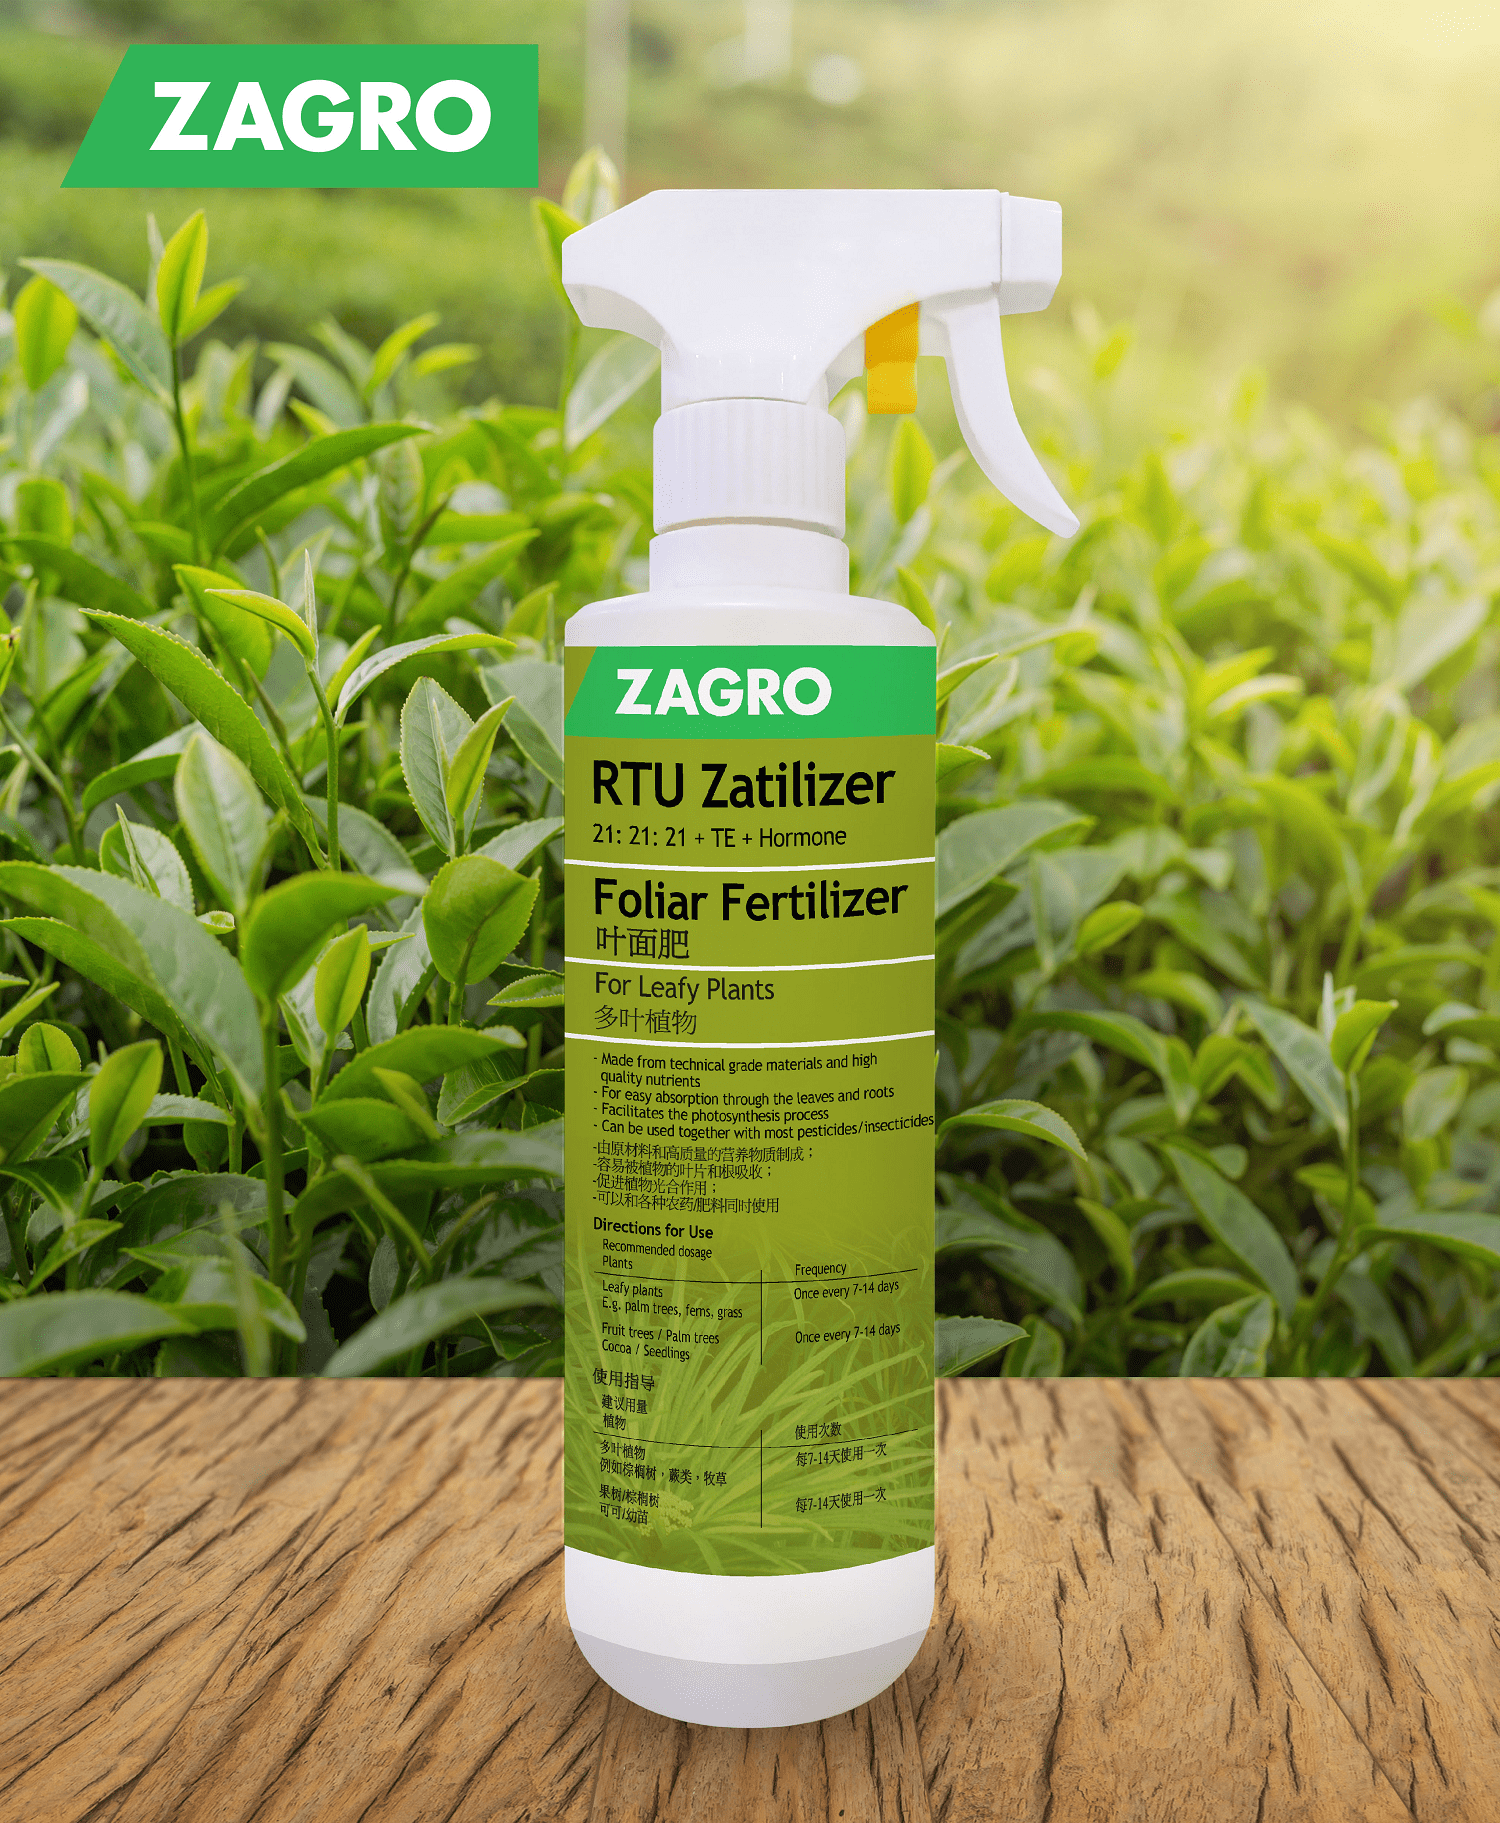 RTU Zatilizer (Foliar Fertilizer for Leafy Plants)